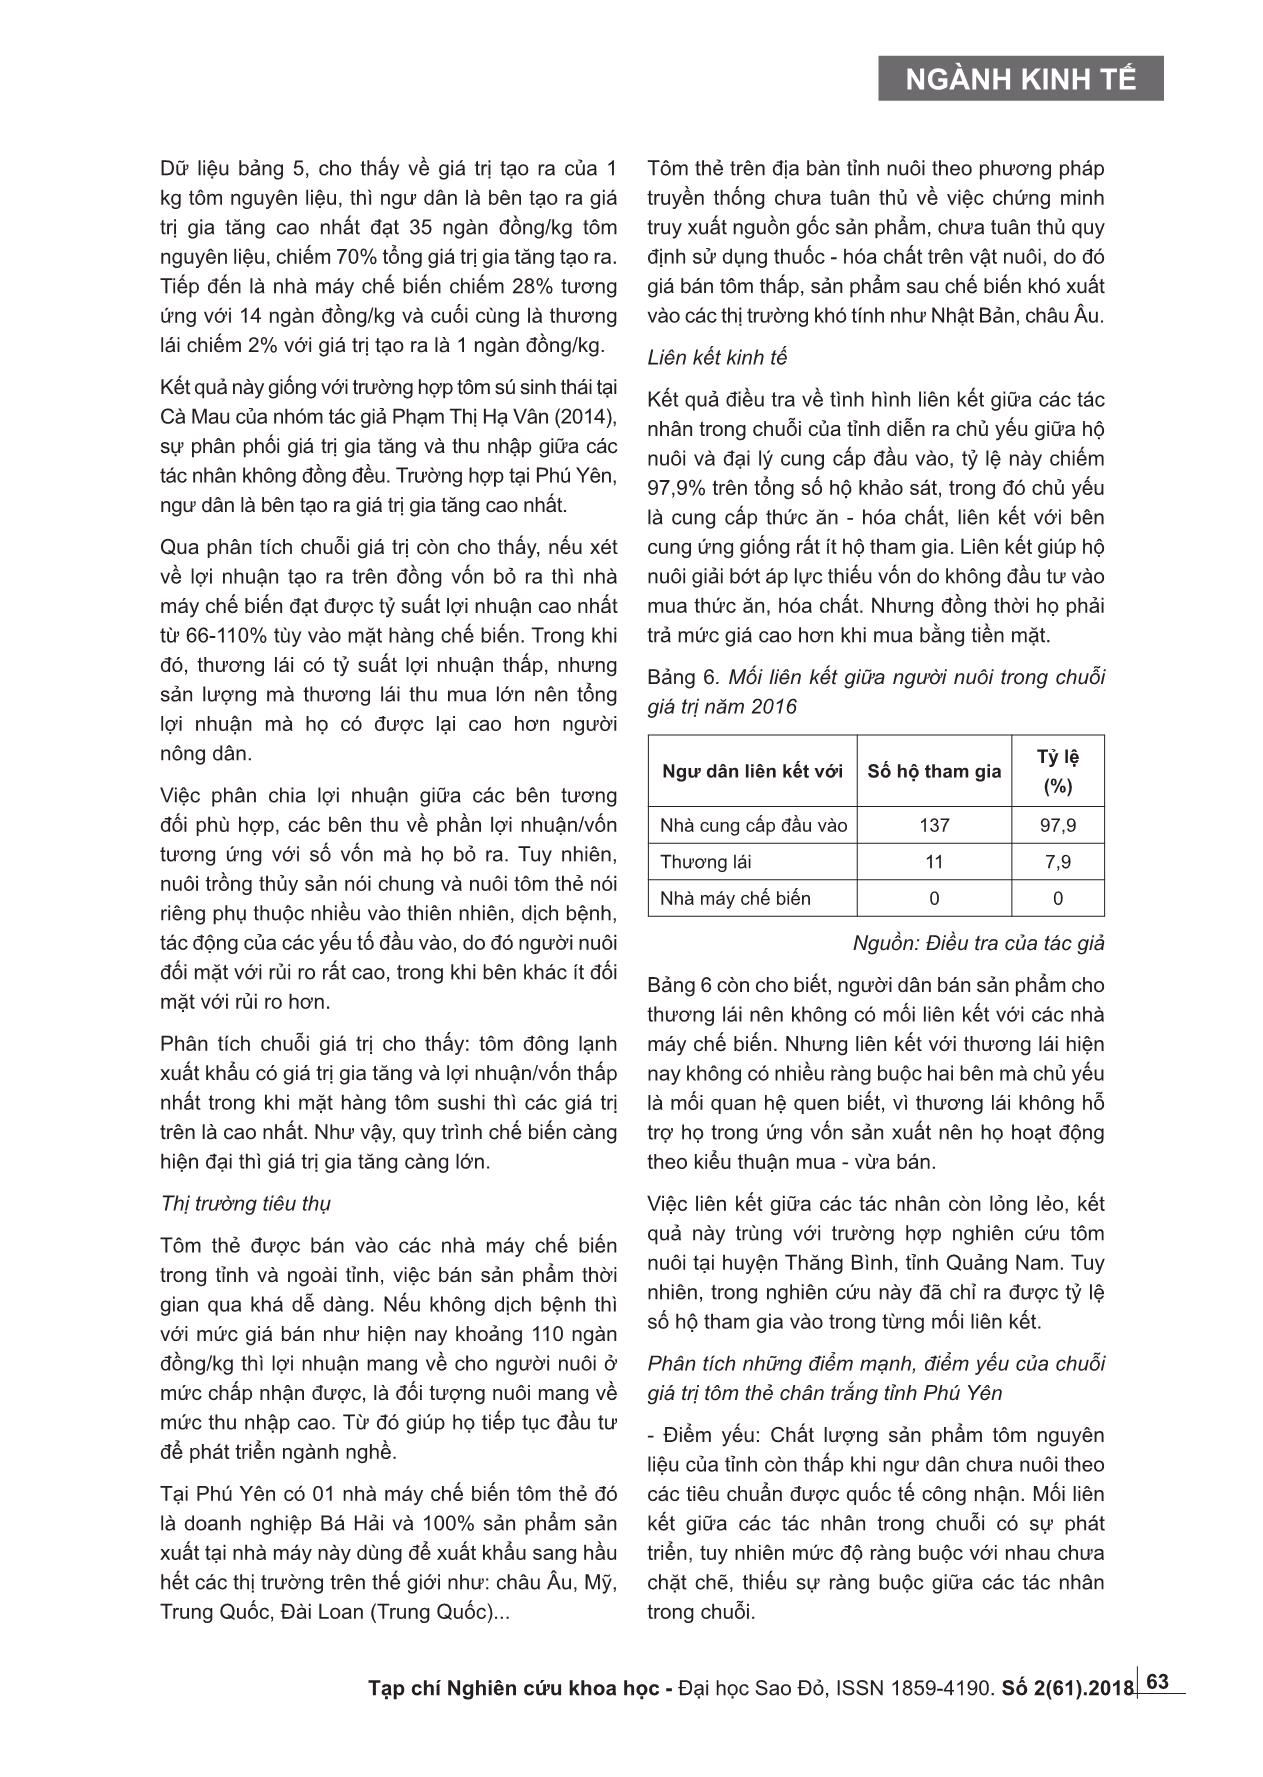 Phát triển chuỗi giá trị tôm thẻ chân trắng tỉnh Phú Yên trang 5